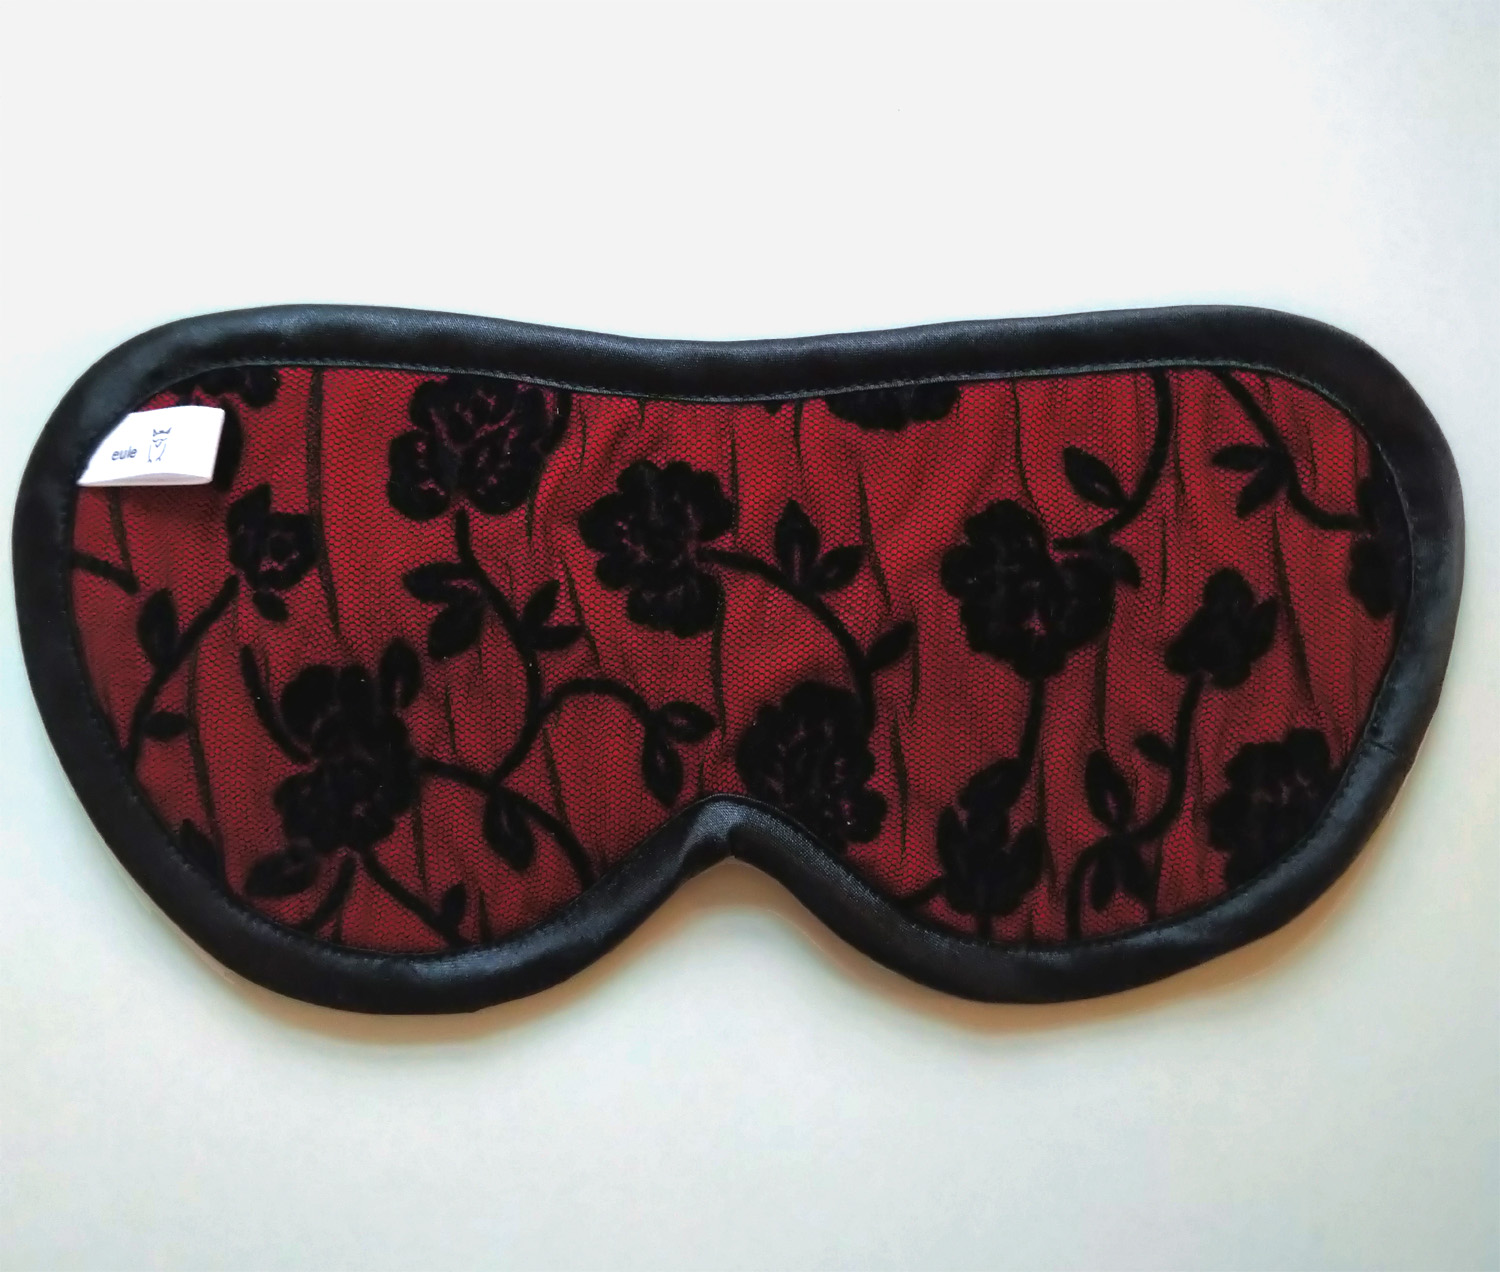 schlafbrille aus roter seide mit schwarzem overlay